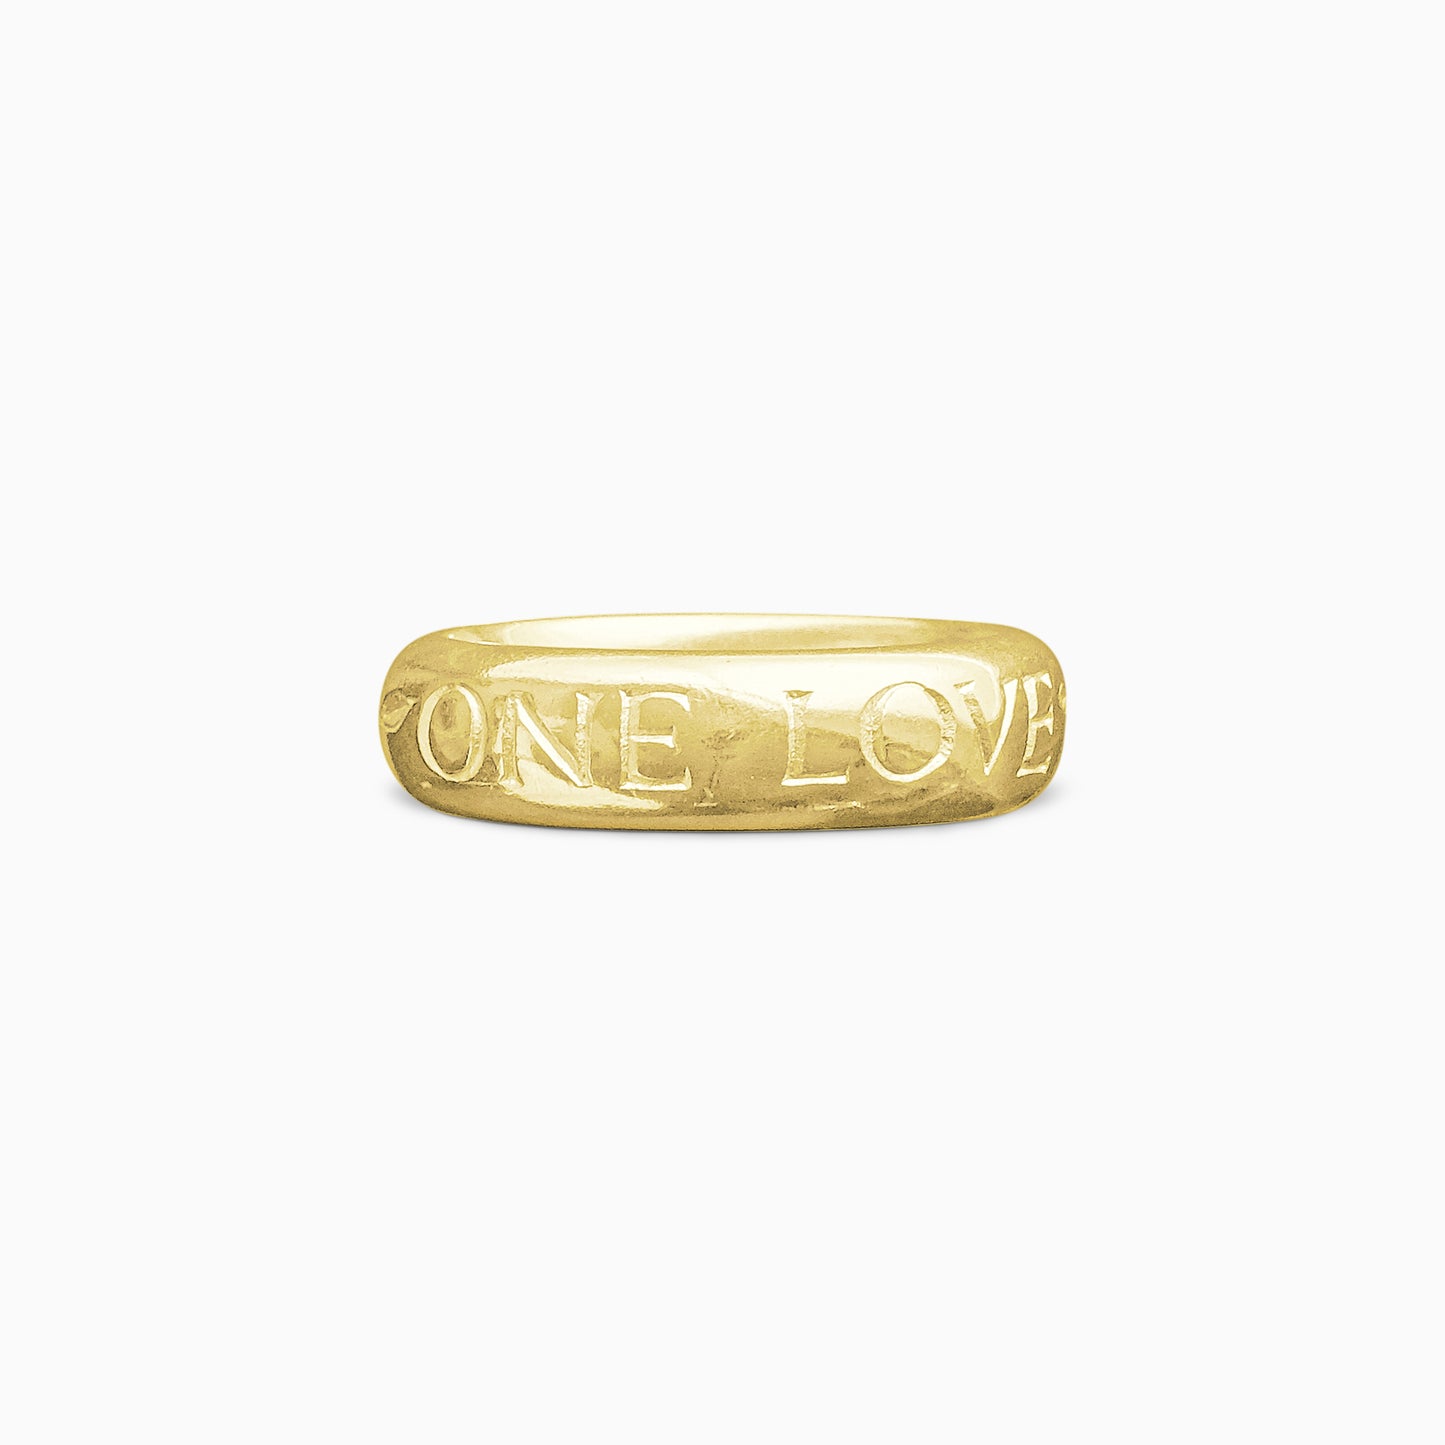 One Love men's inscription ring